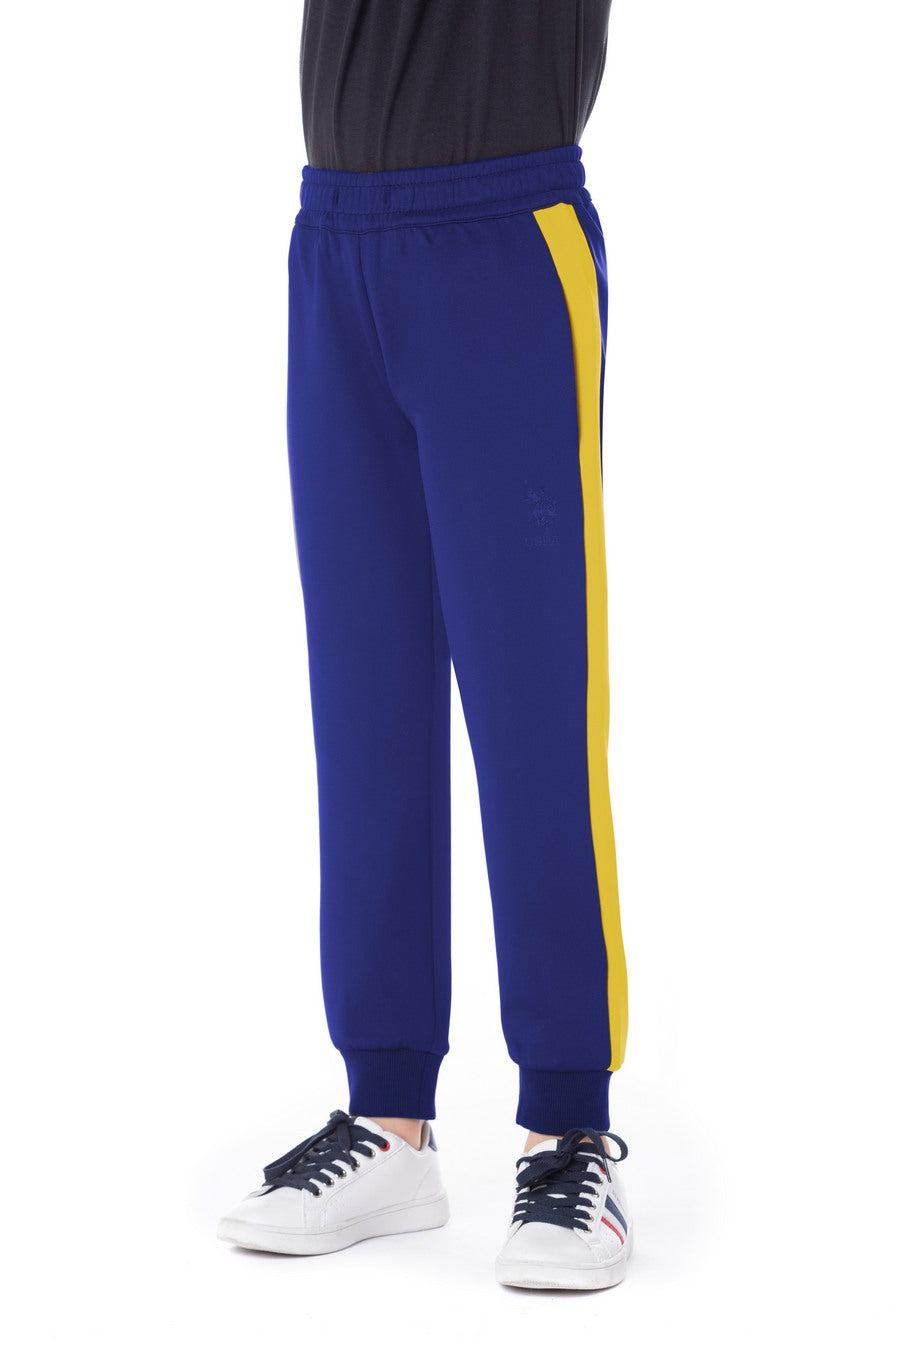 Pantalone sportivo da bambino con banda laterale e logo U.S. Polo Assn.